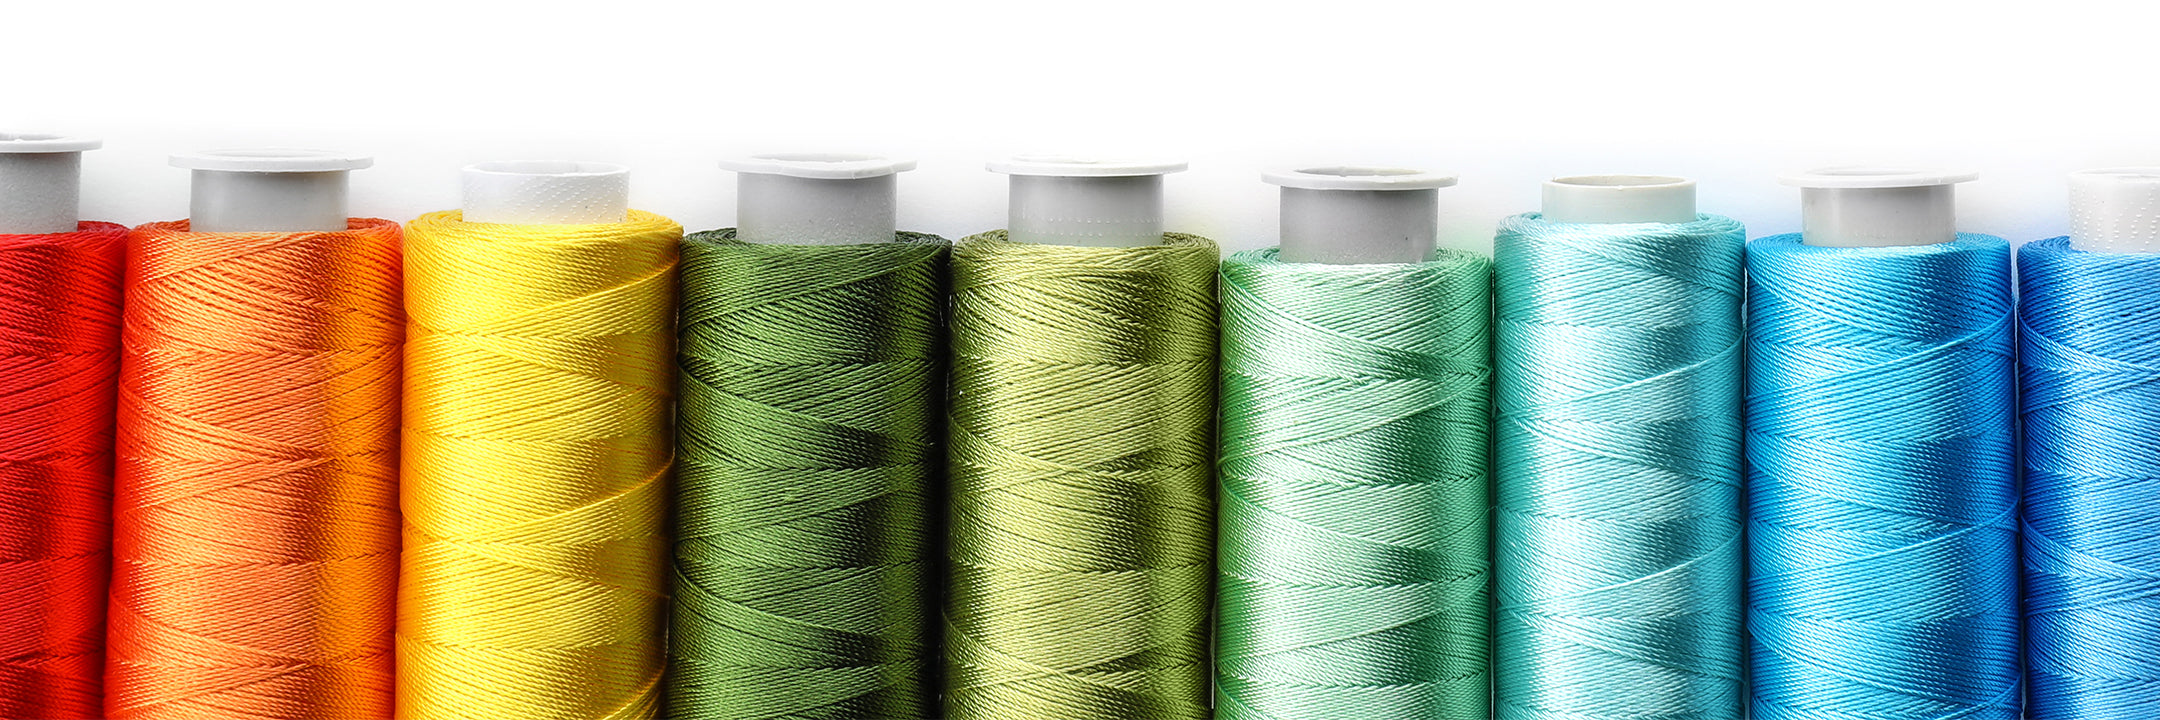 24024円 ブランド激安セール会場 限定価格Z.L.FFLZ Embroidery Tool 36 Pcs Sewing Thread Bobbins with Bobbin Case Kit for Multiple Machine Standard Size Sewi